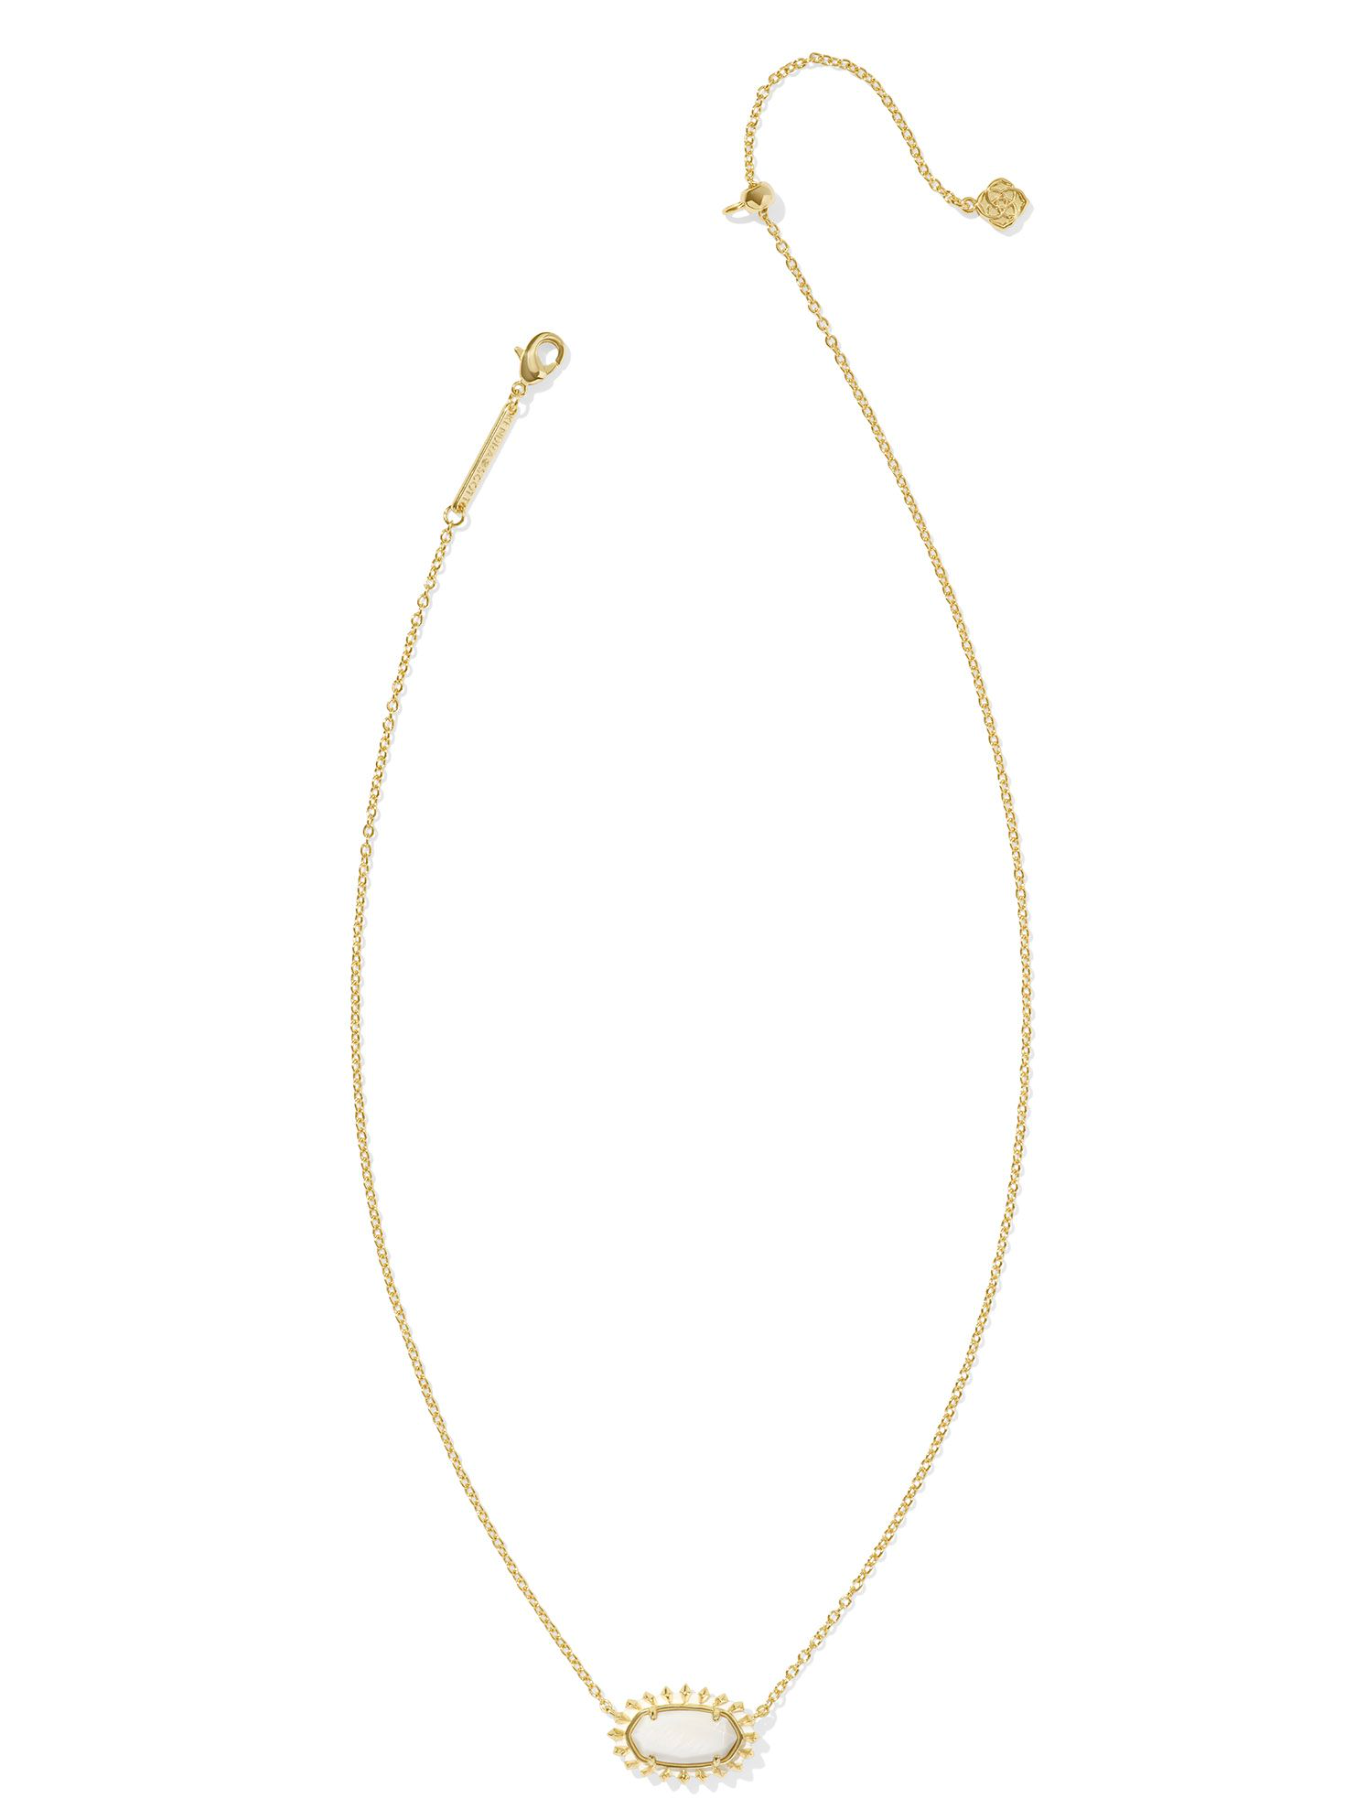 Elisa Gold Color Burst Frame Short Pendant Necklace in White Mother-of-Pearl | KENDRA SCOTT